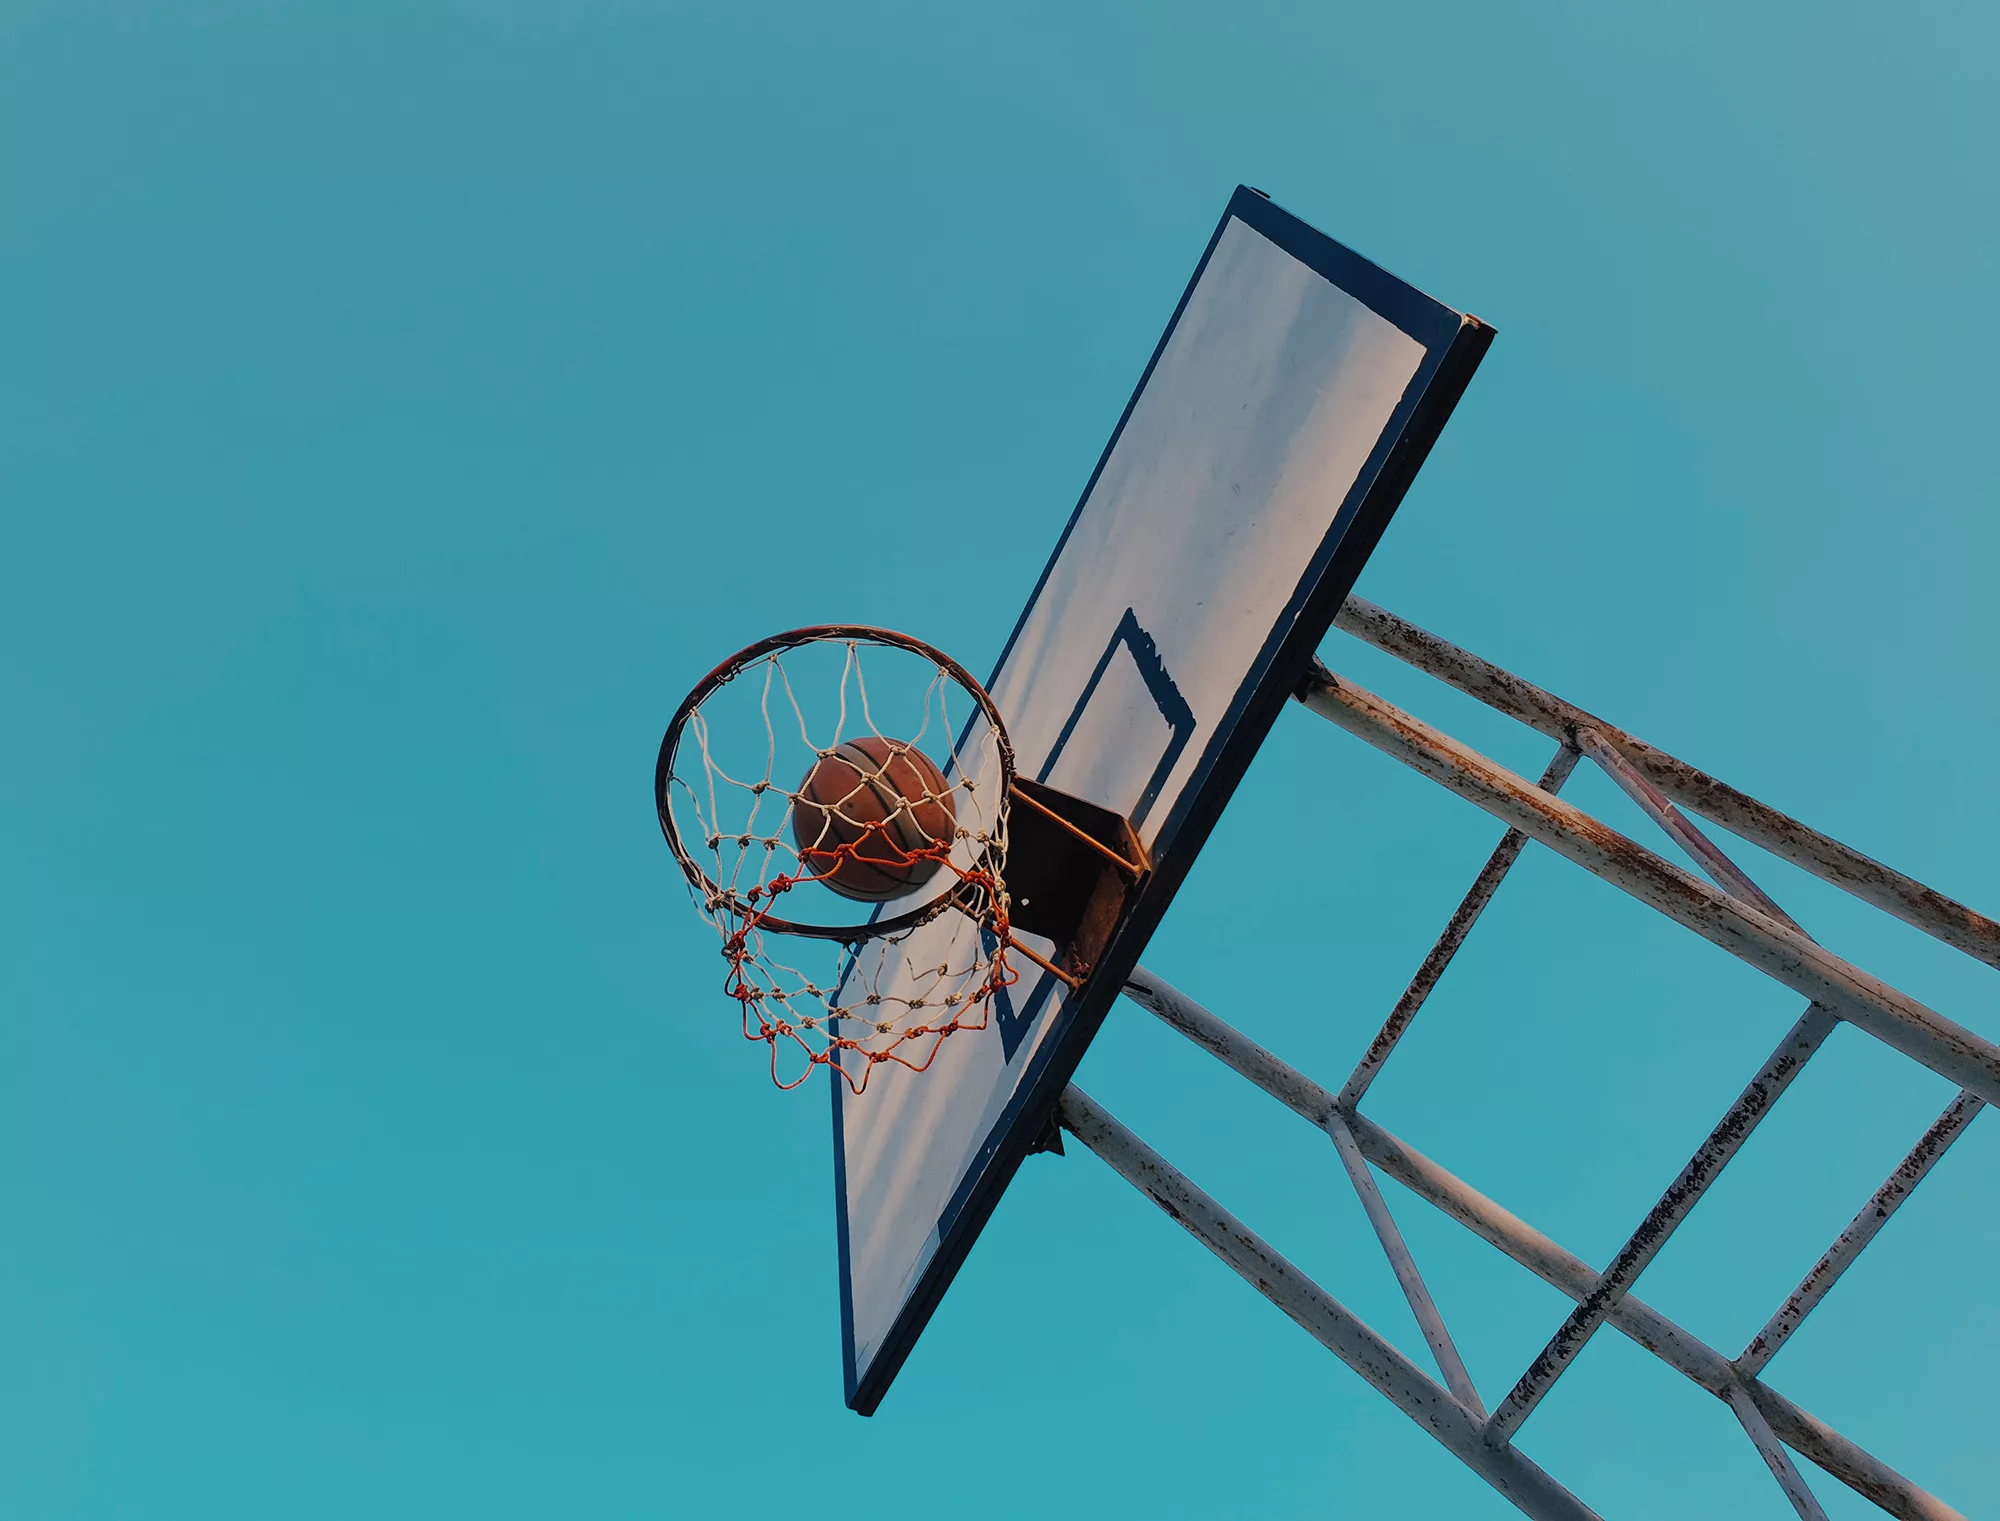 basketball-going-through-hoop